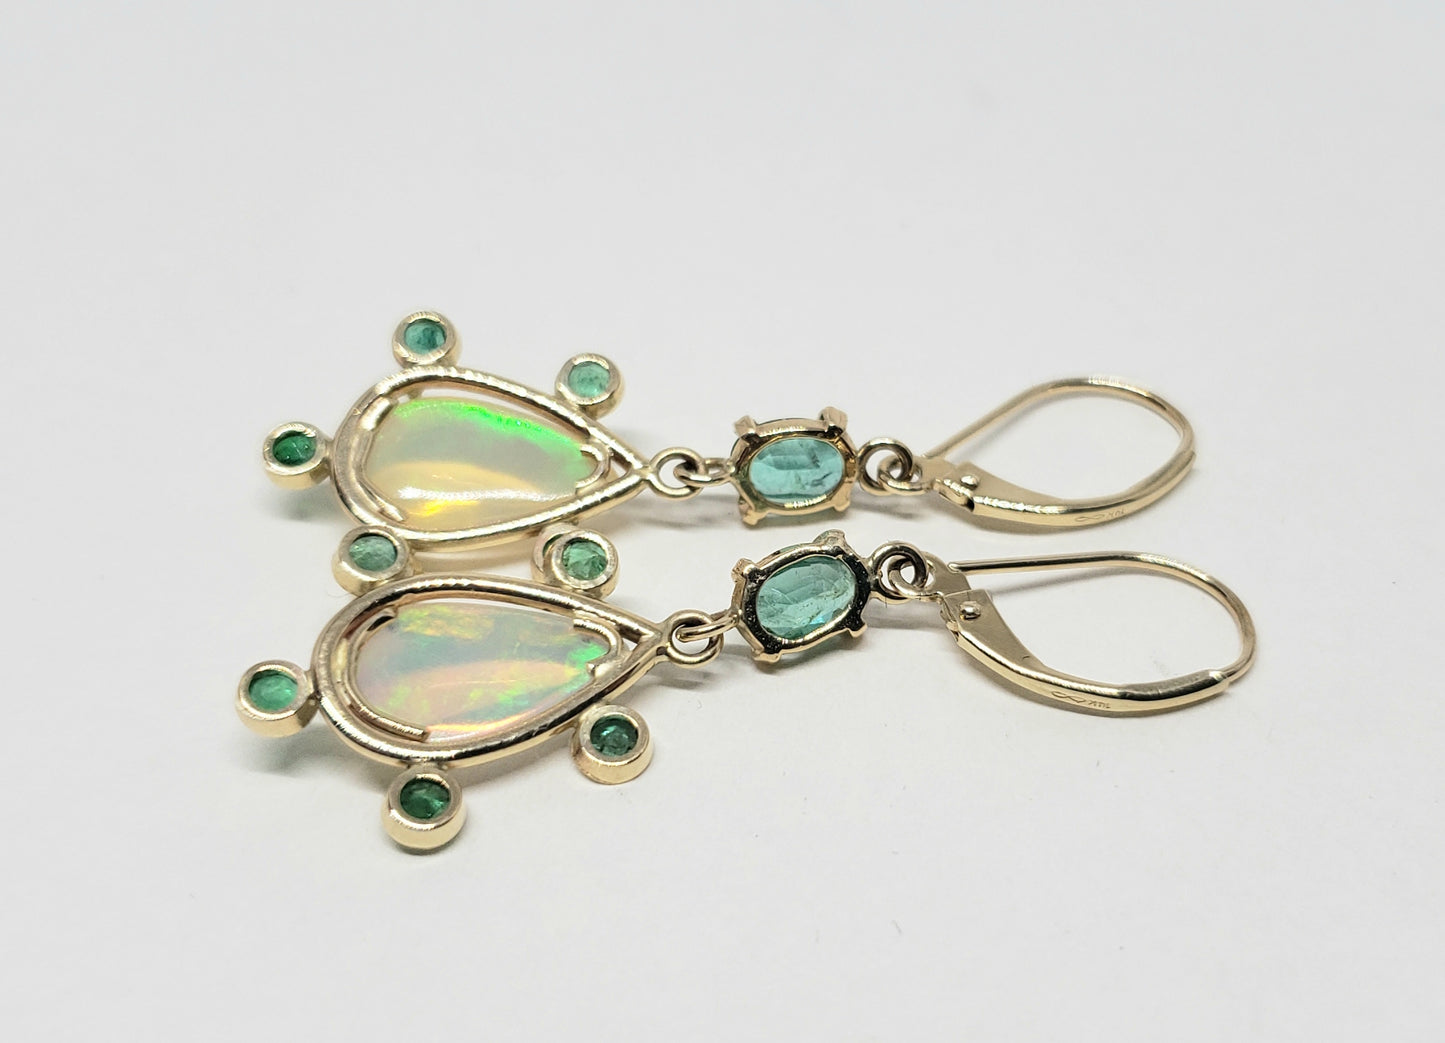 Opal & Emerald Earrings 14k Gold